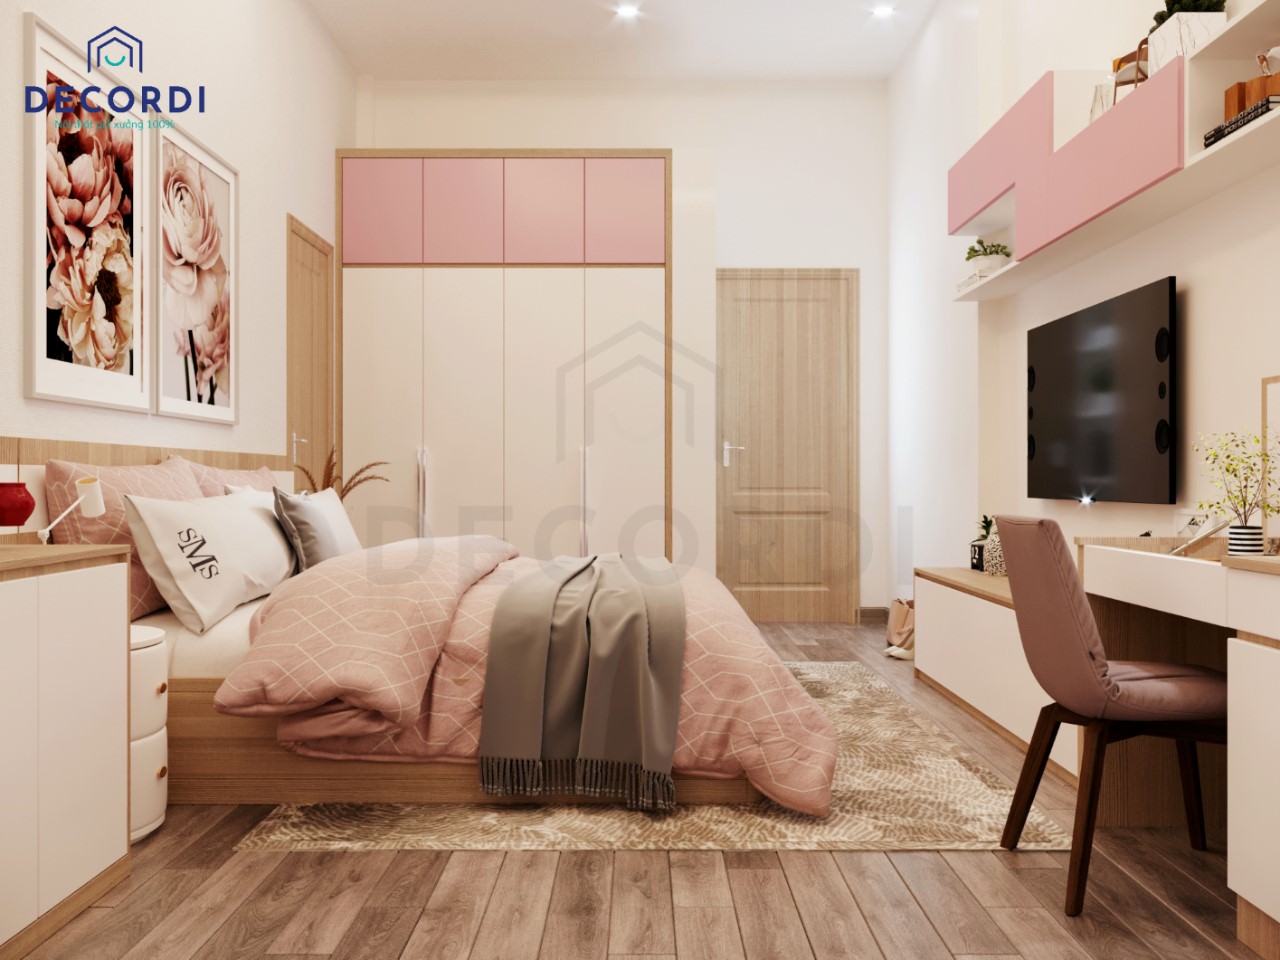  Màu sắc phòng ngủ và đồ nội thất được thiết kế hài hòa